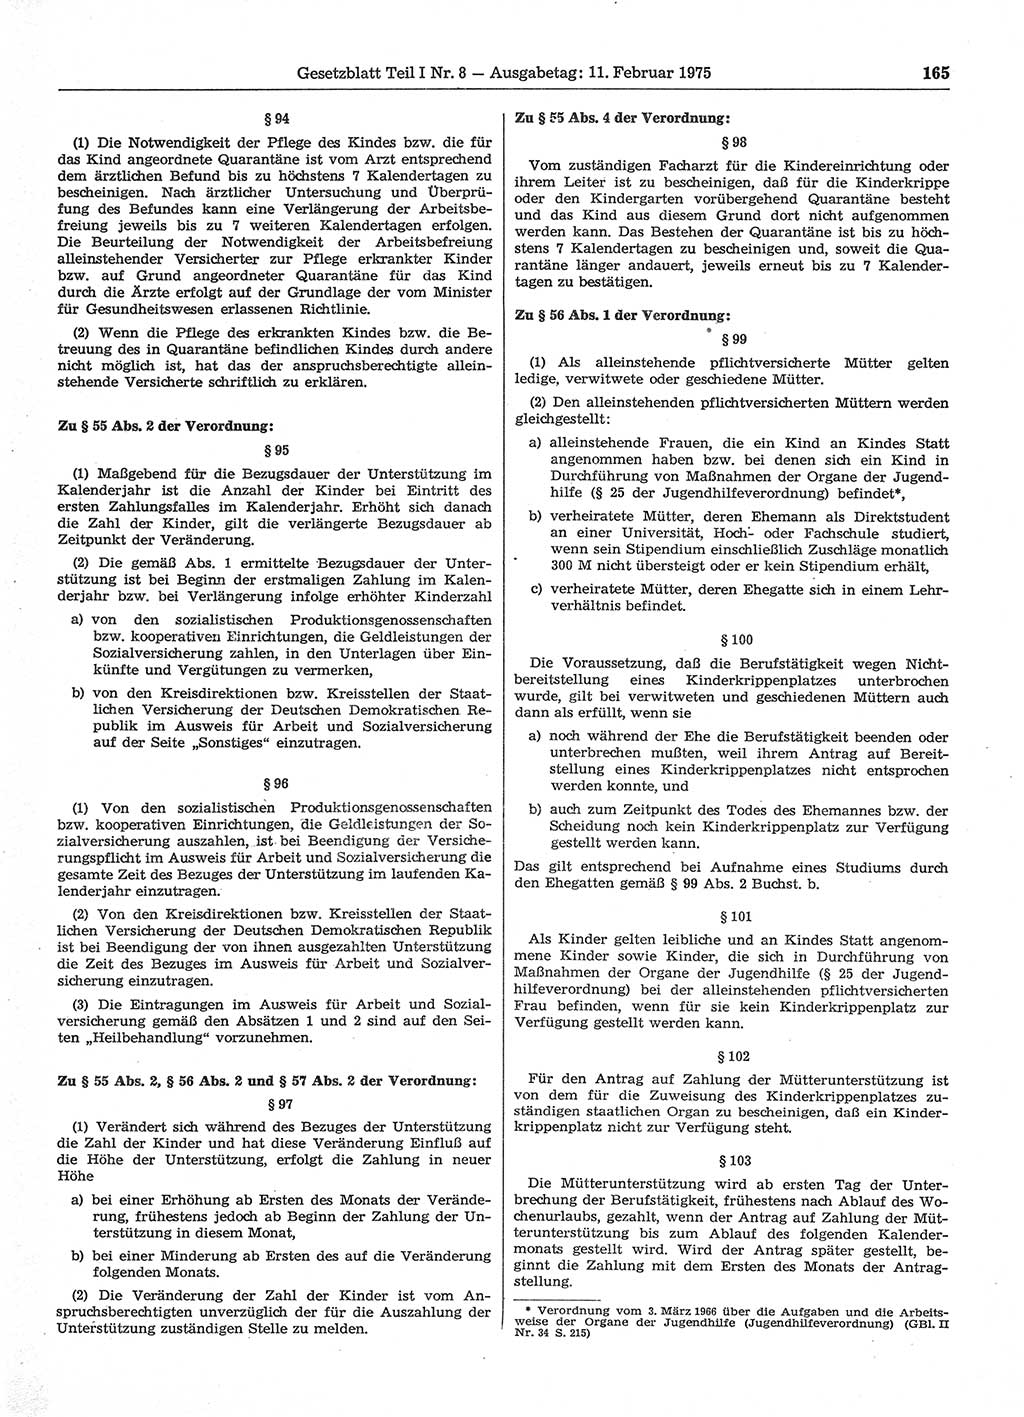 Gesetzblatt (GBl.) der Deutschen Demokratischen Republik (DDR) Teil Ⅰ 1975, Seite 165 (GBl. DDR Ⅰ 1975, S. 165)